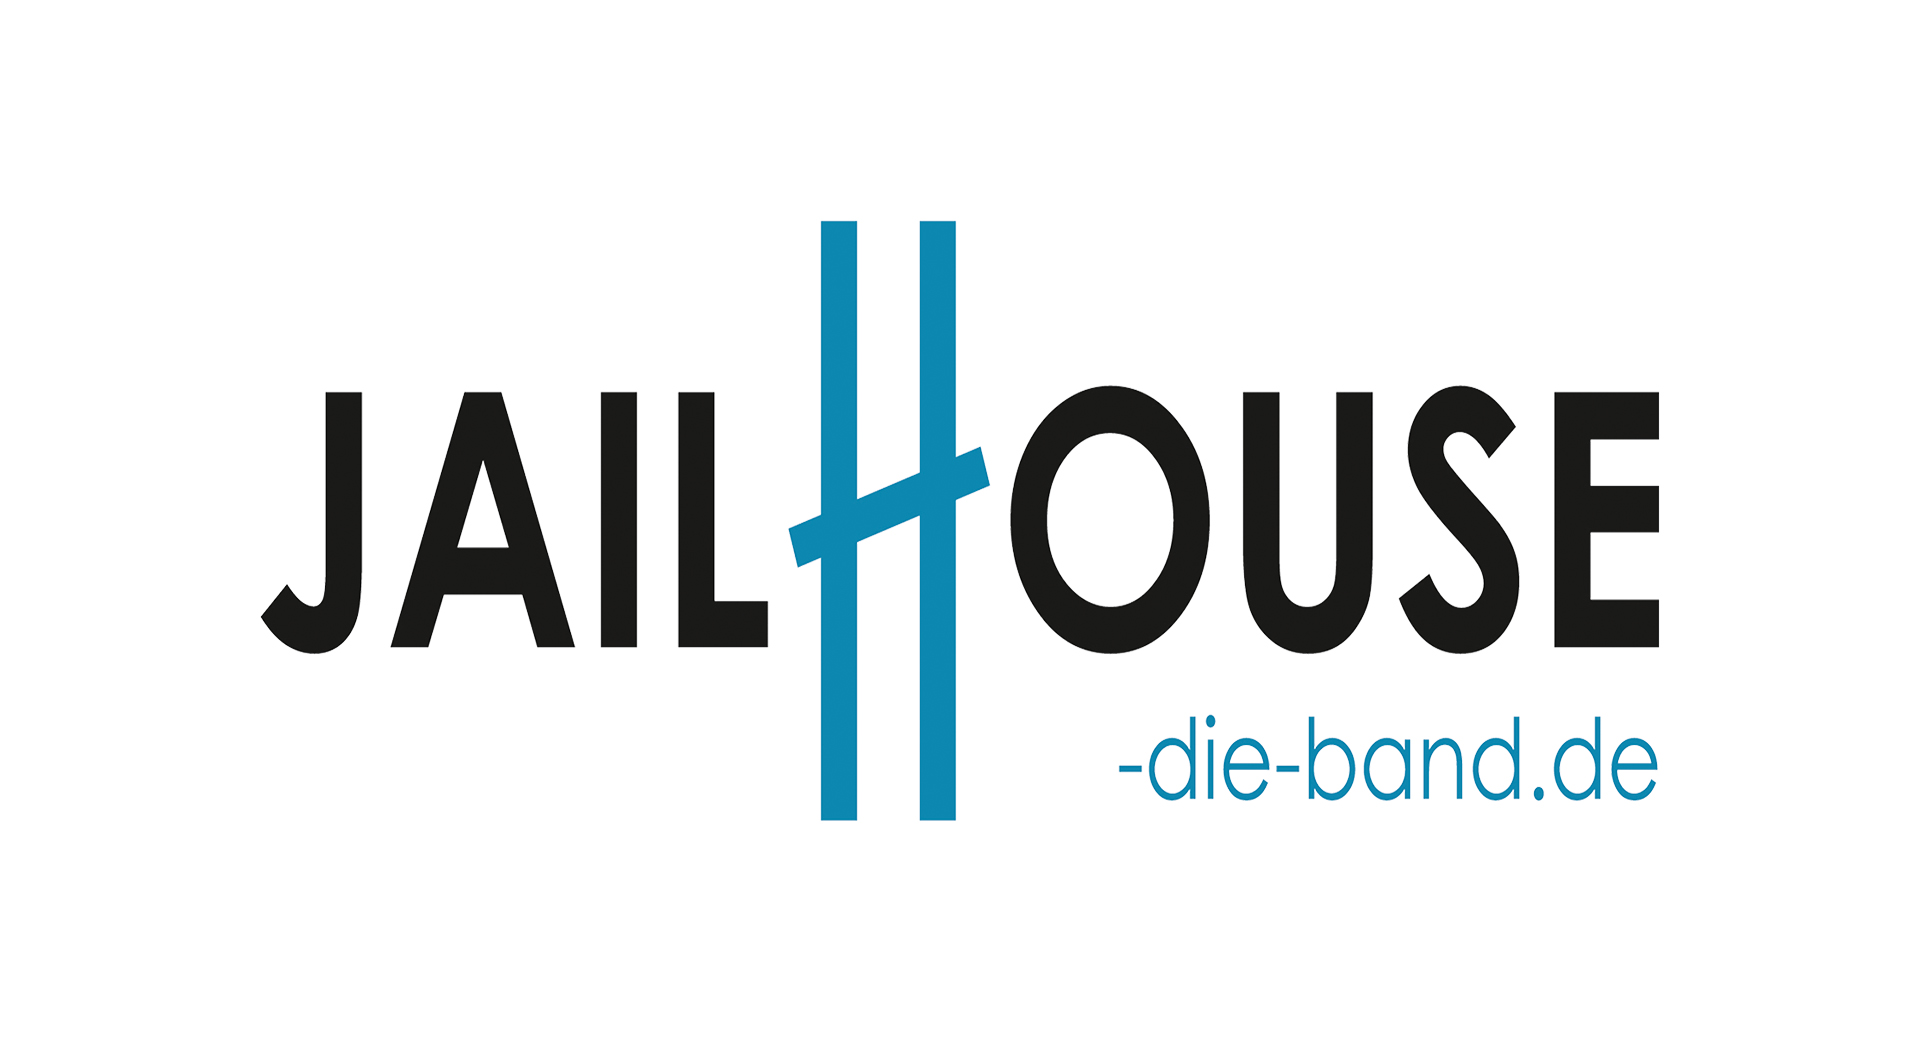 (c) Jailhouse-die-band.de